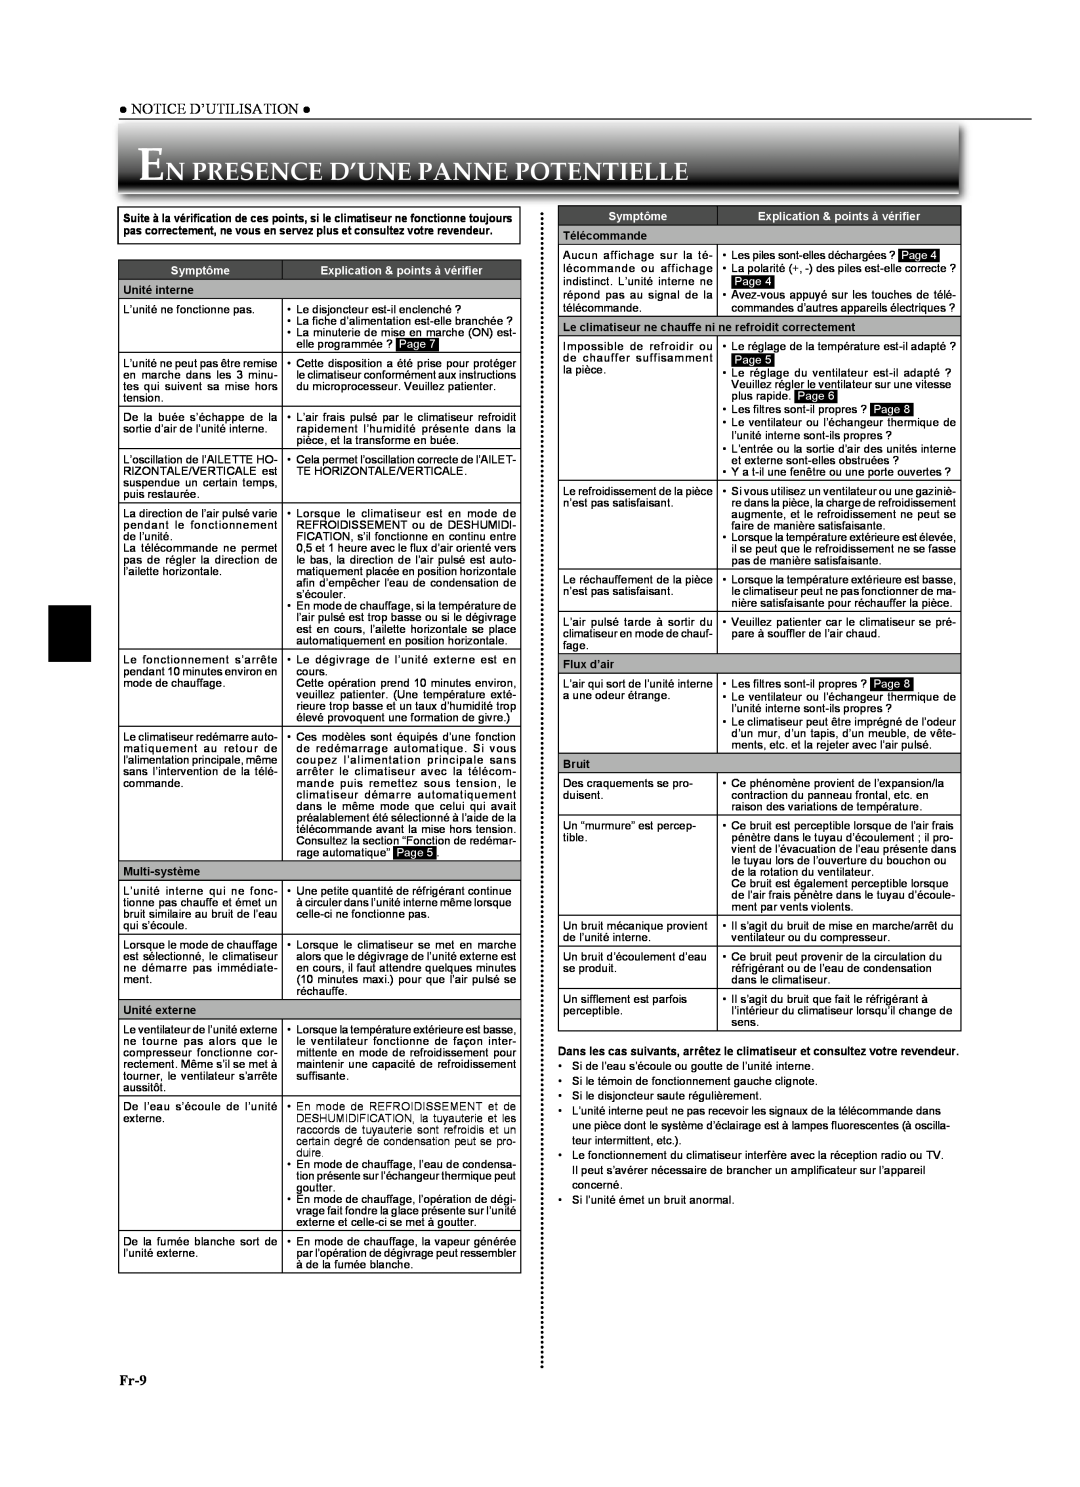 Mitsubishi Electronics MSZ-GA24NA En Presence D’Une Panne Potentielle, Fr-9, Notice D’Utilisation, Symptôme, Page 